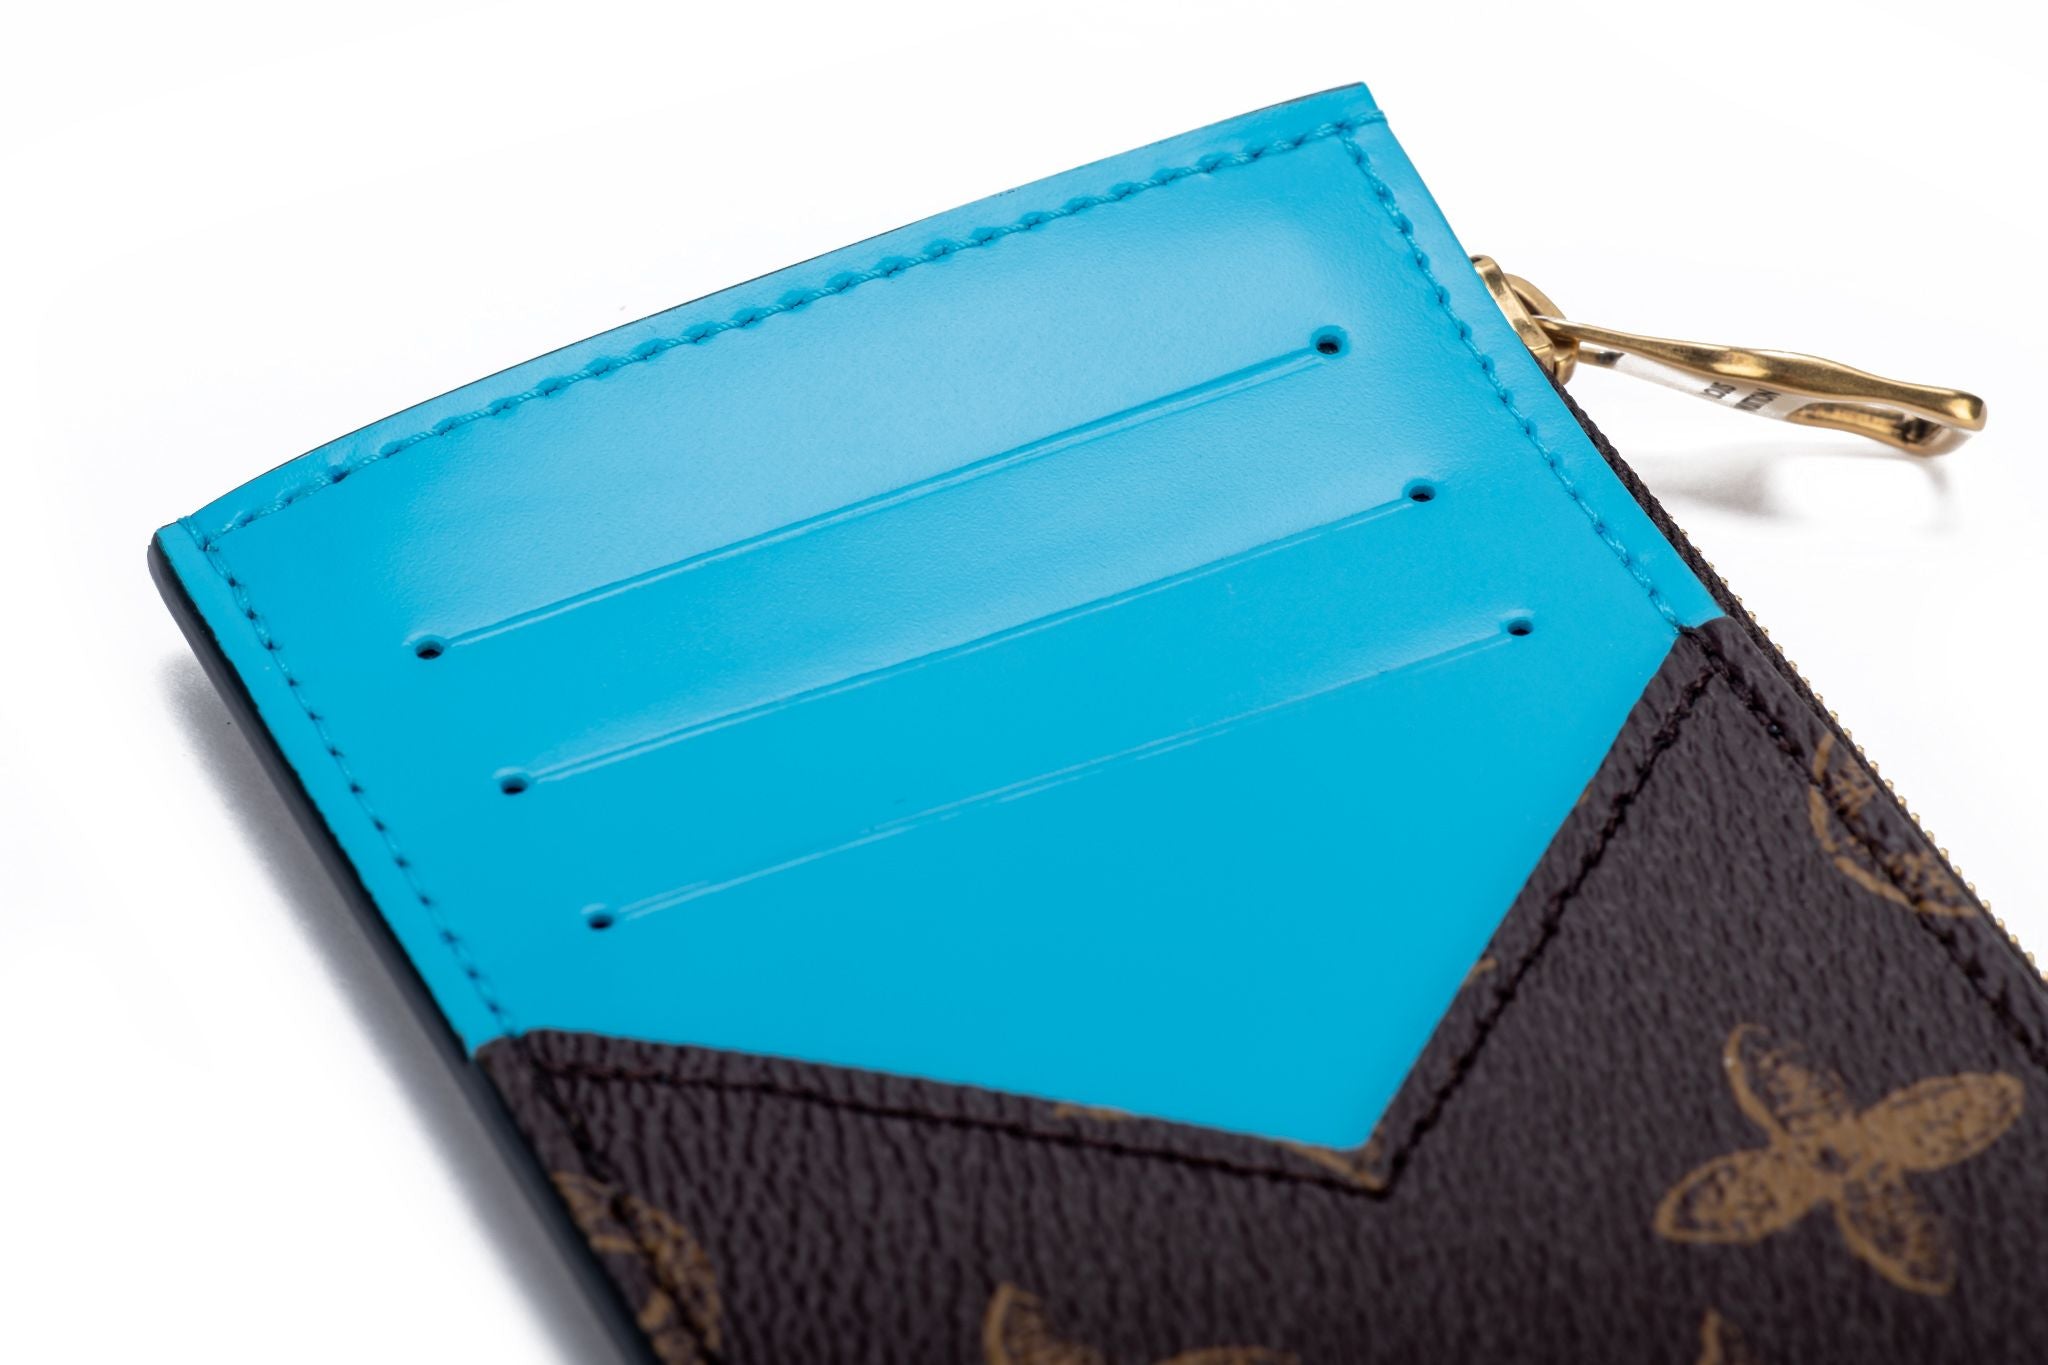 Louis Vuitton Coin Card Holder in Taigarama Cobalt Blue